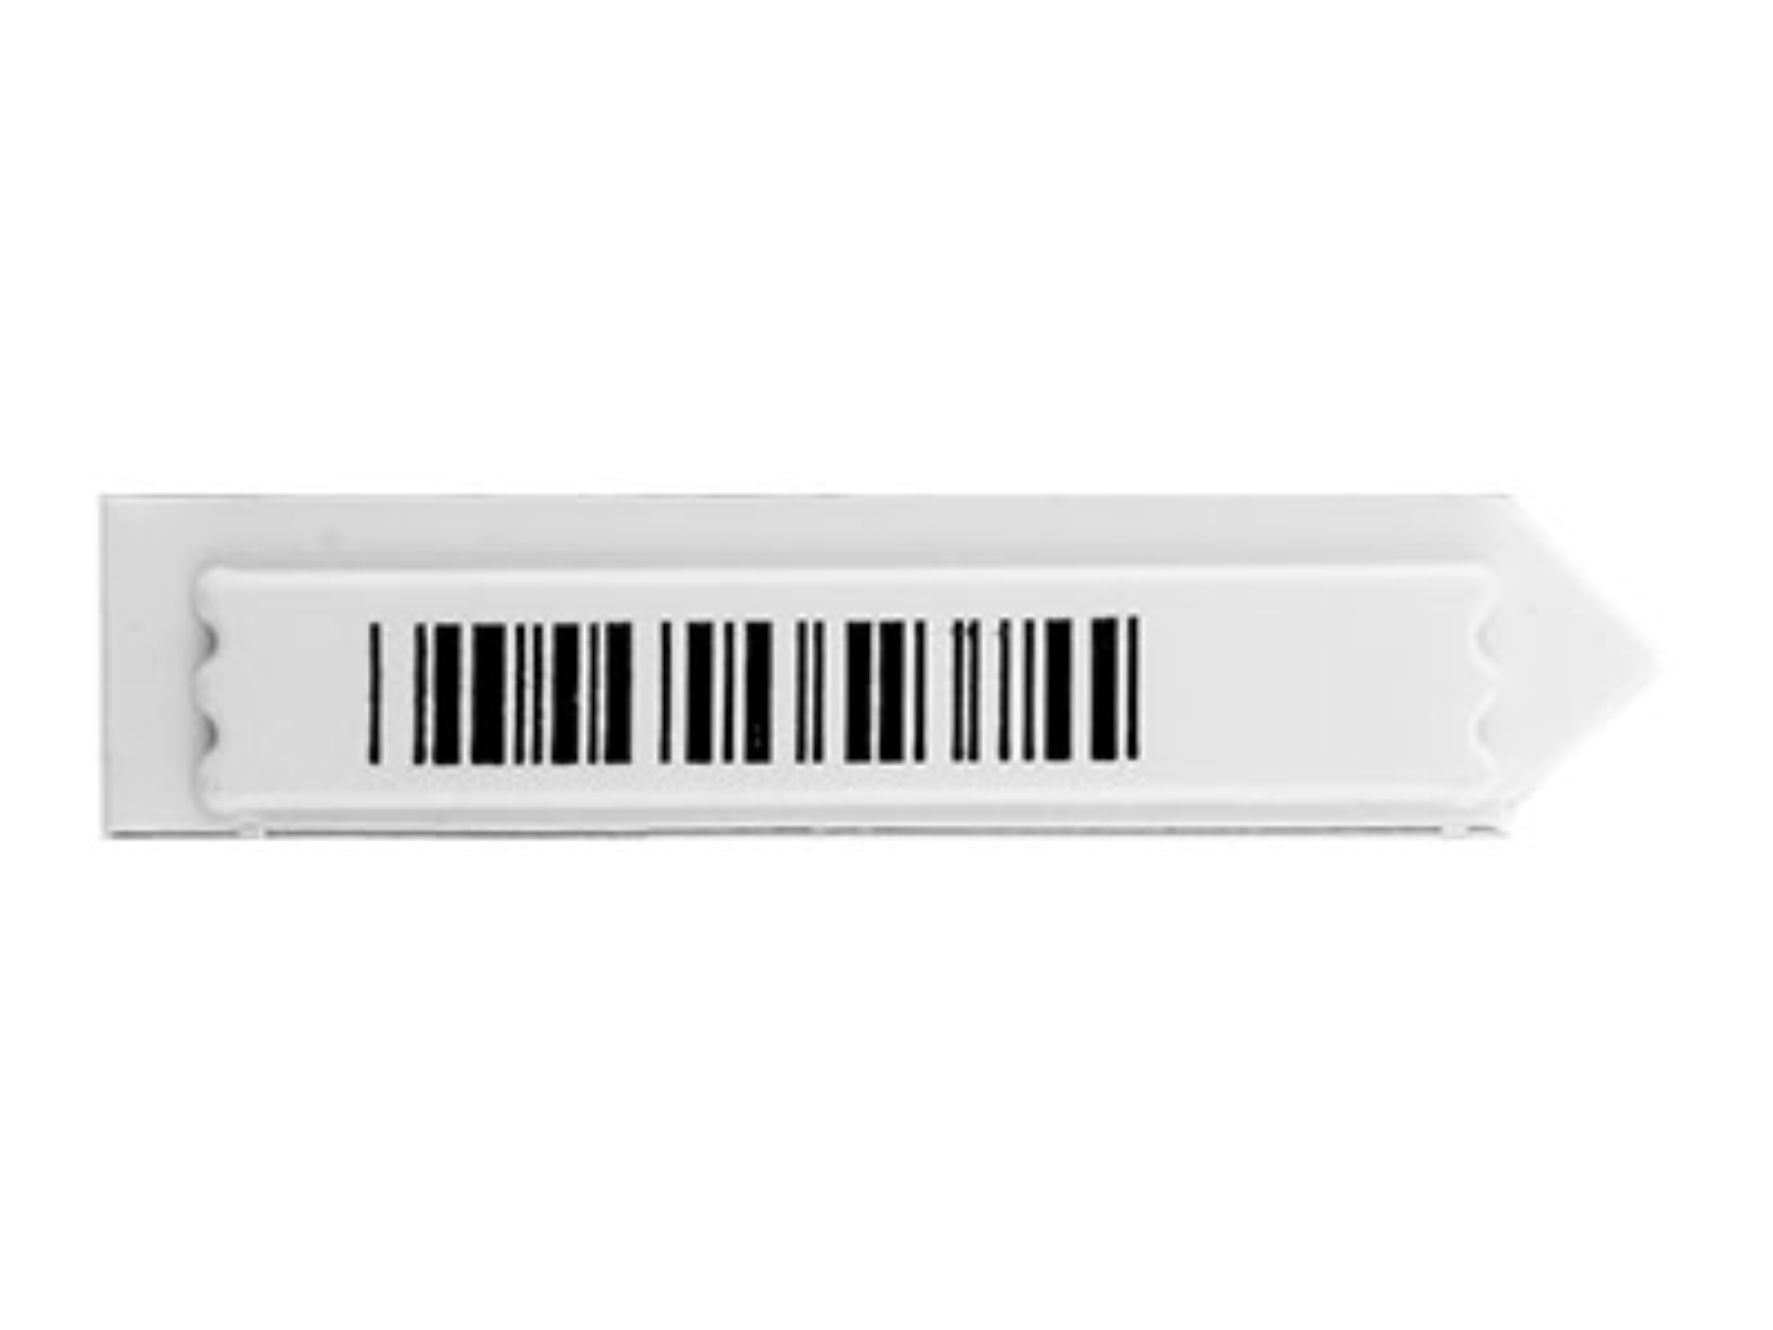 5000St AM Klebeetiketten Weiß 58kHz Warensicherung Label Deaktivierbar 10x45mm 